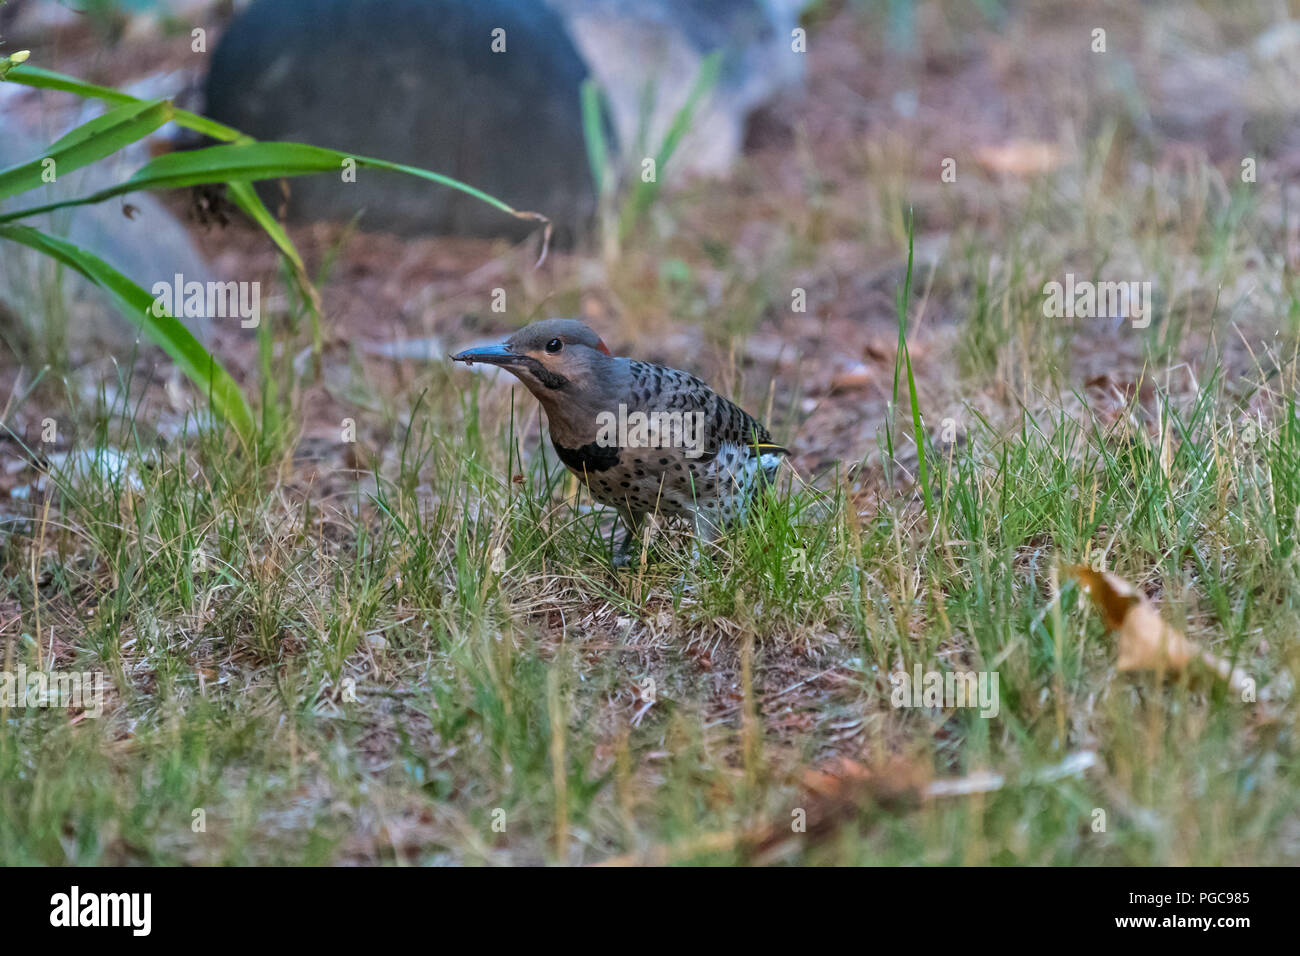 Le Pic flamboyant (Colaptes auratus) woodpecker debout sur le sol. Banque D'Images